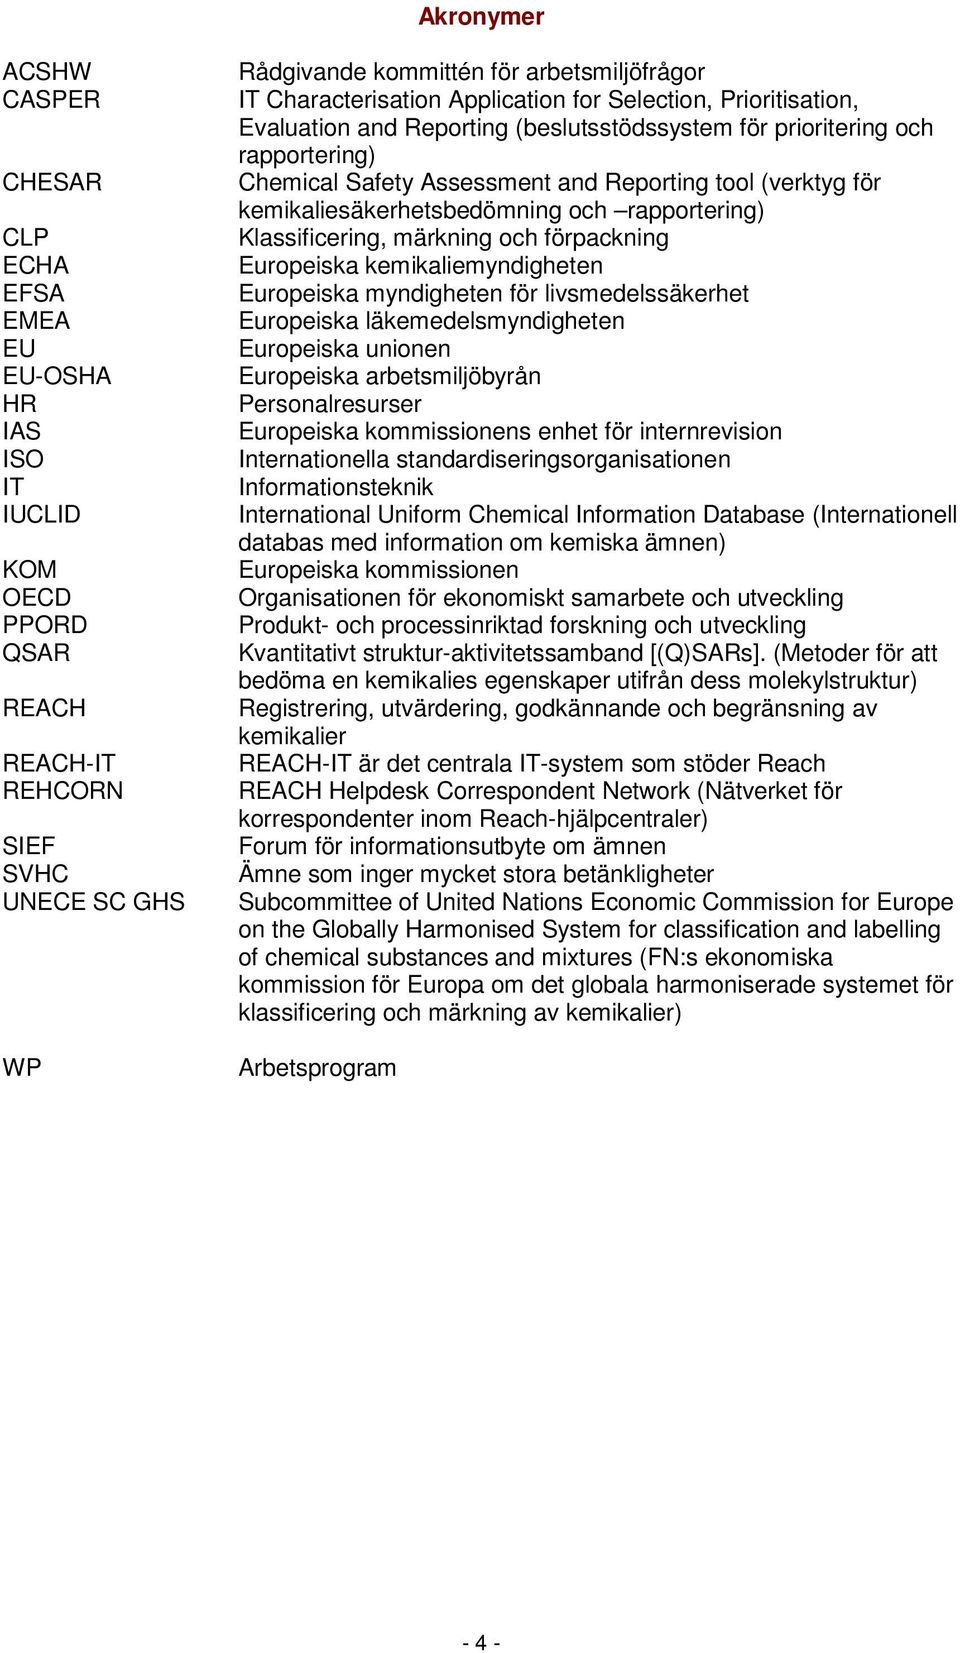 kemikaliesäkerhetsbedömning och rapportering) Klassificering, märkning och förpackning Europeiska kemikaliemyndigheten Europeiska myndigheten för livsmedelssäkerhet Europeiska läkemedelsmyndigheten